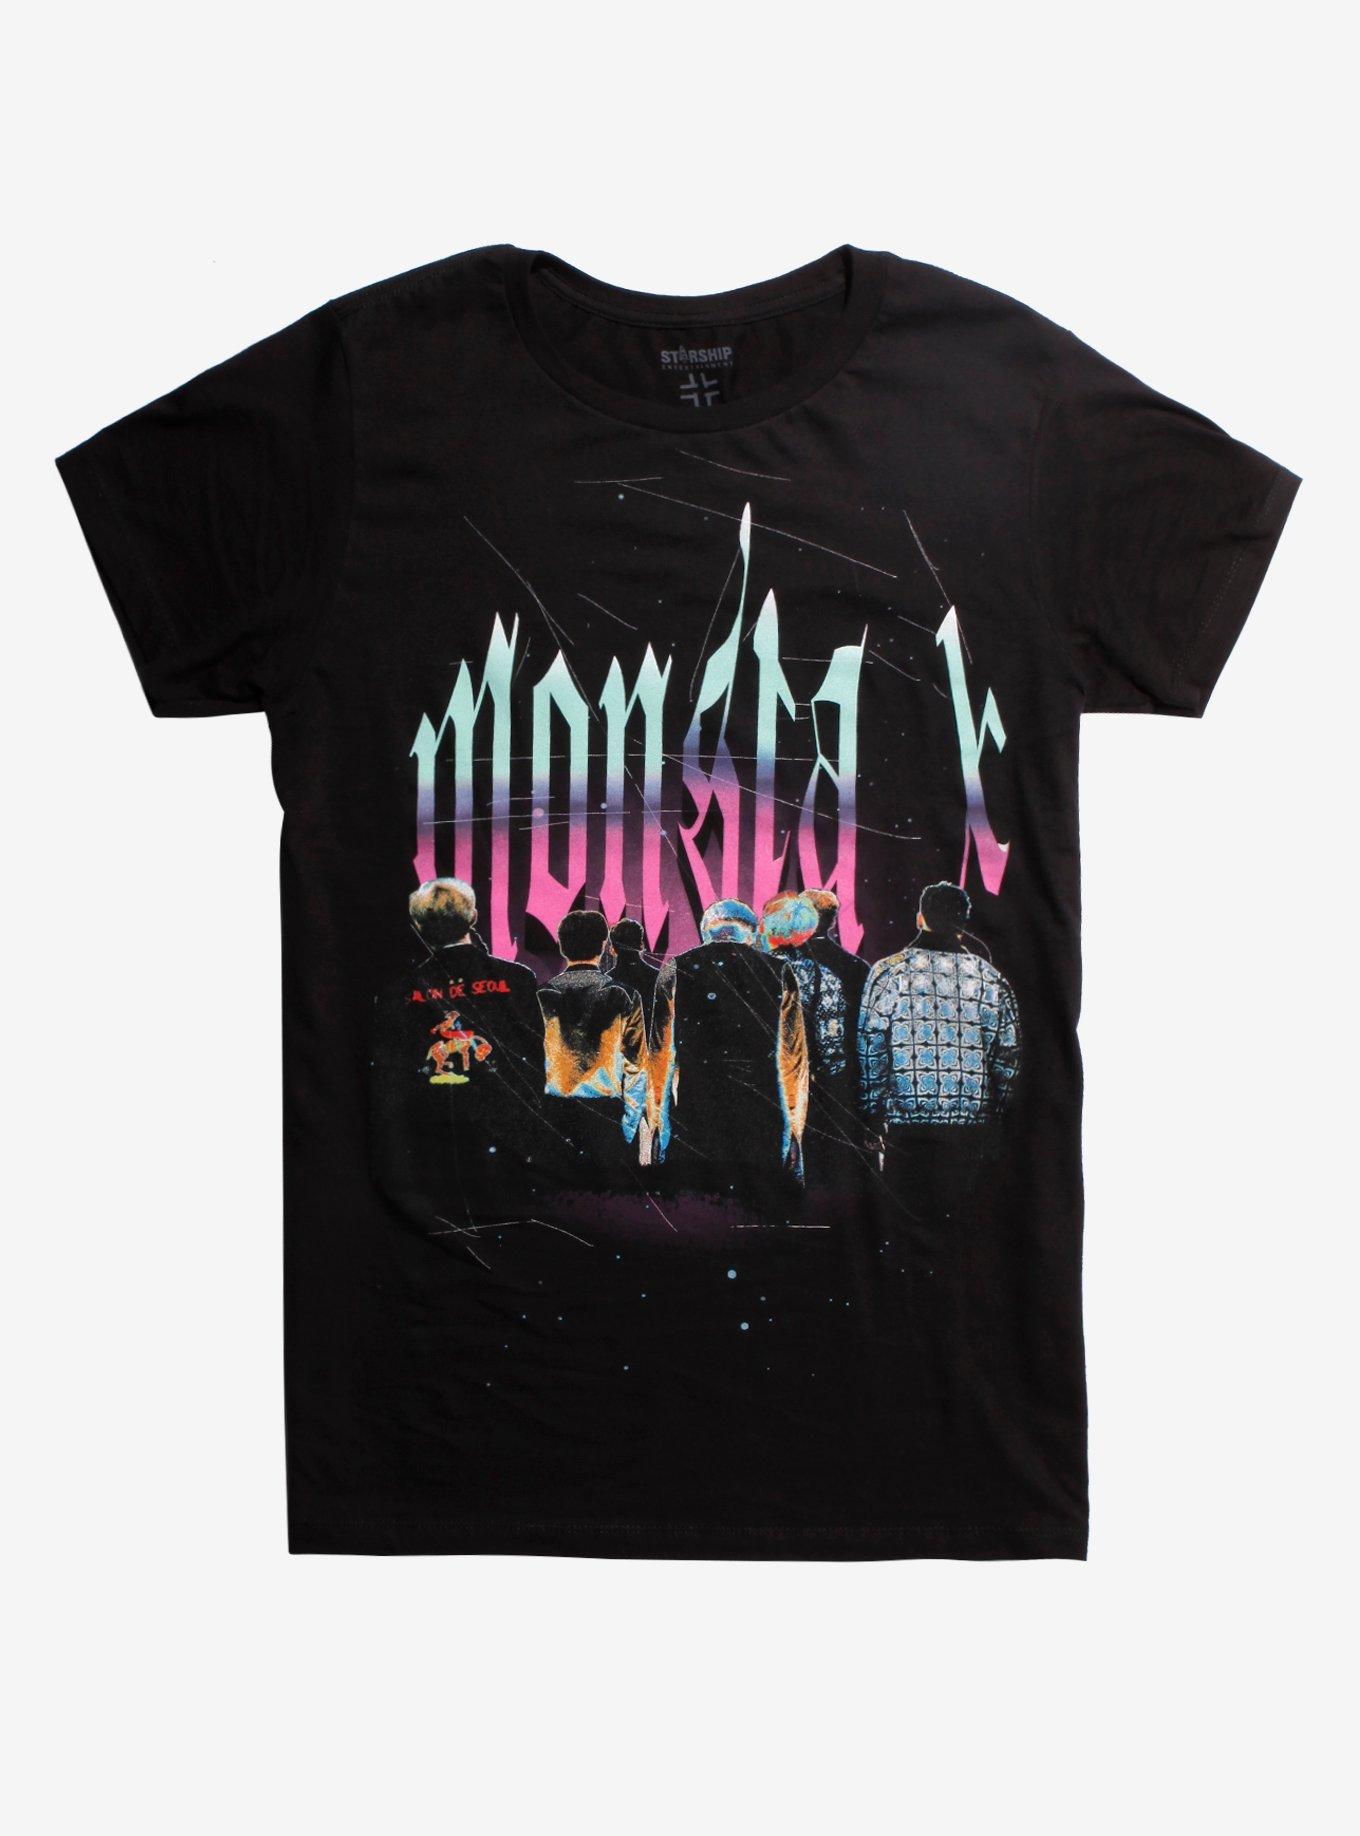 Monsta X Backs T-Shirt, BLACK, hi-res